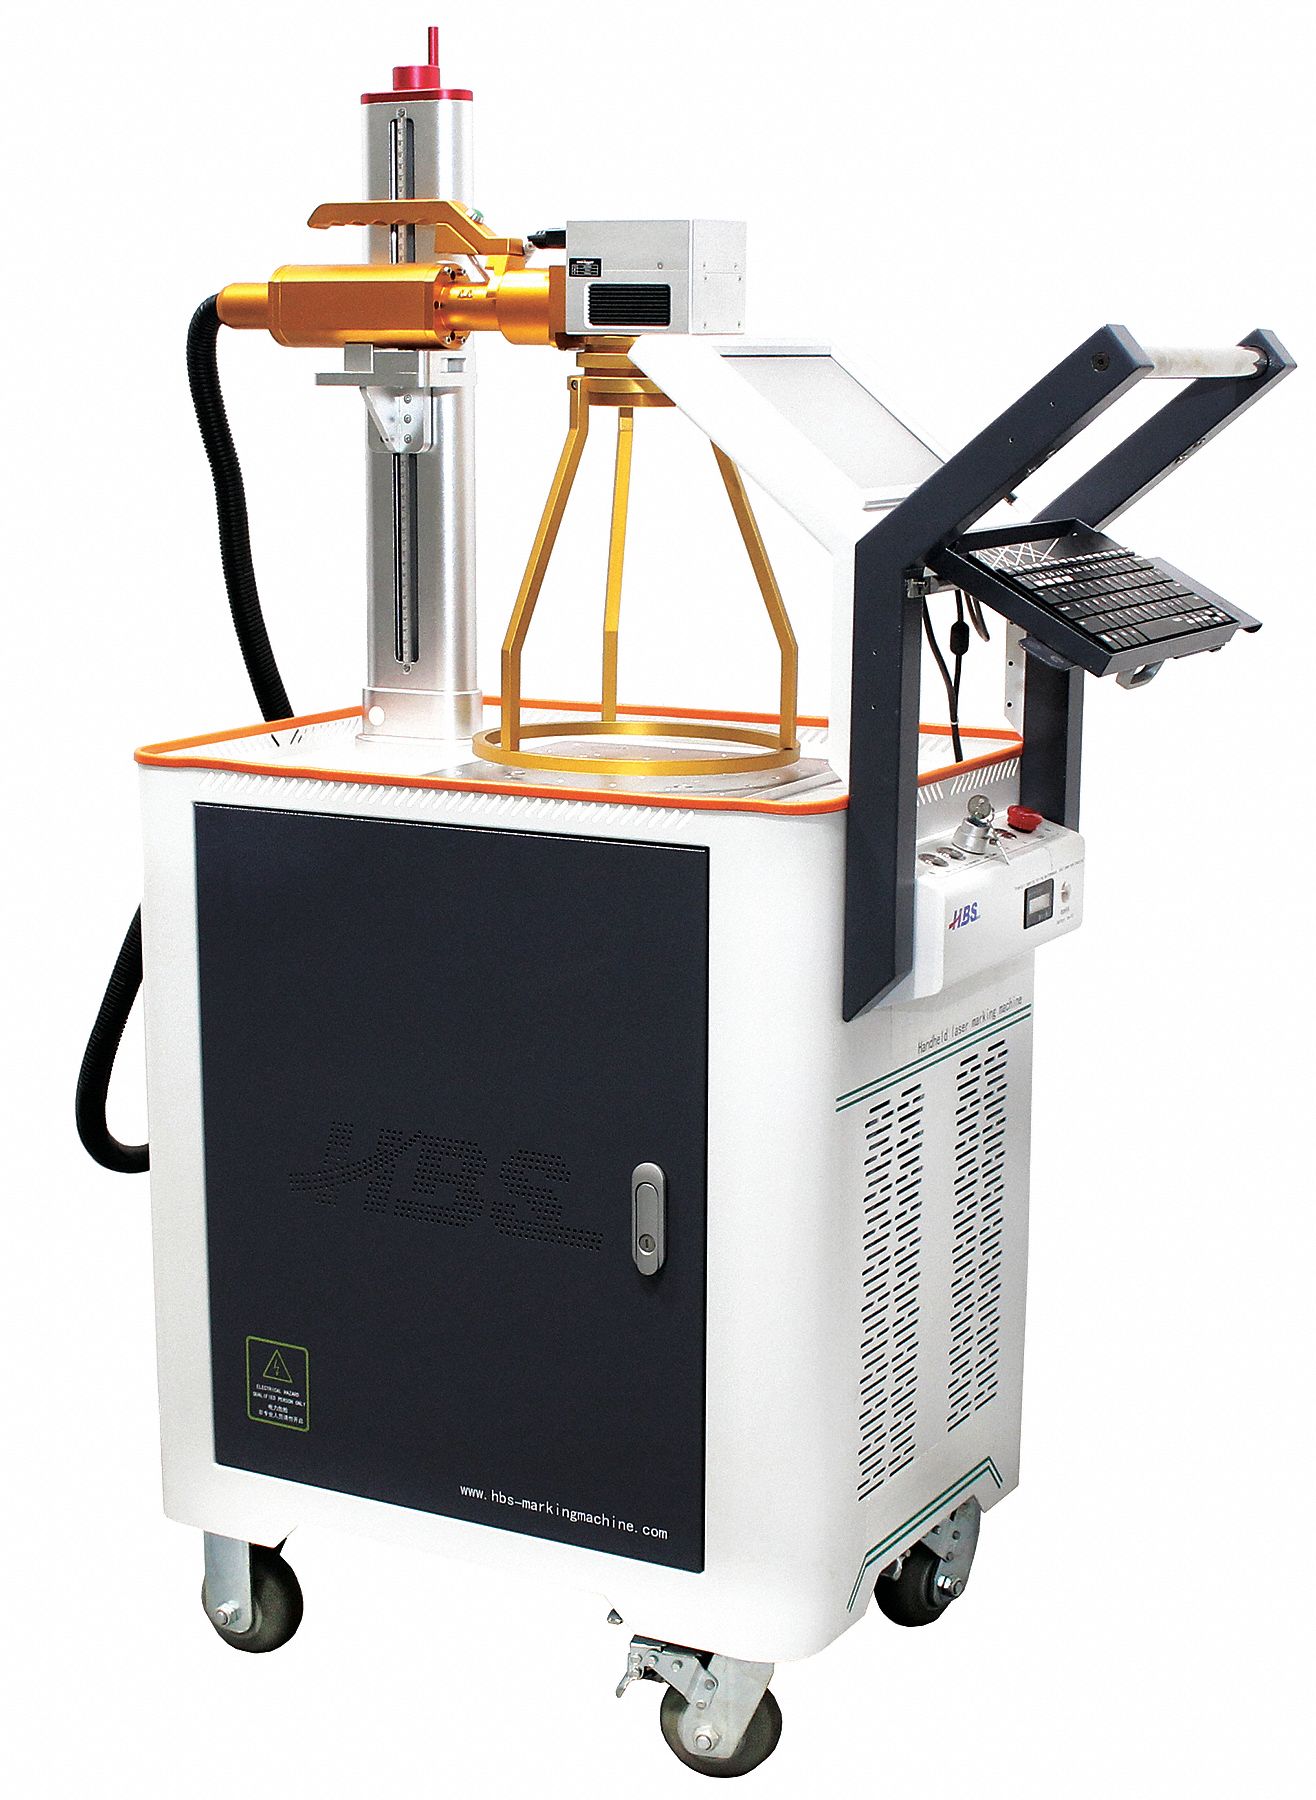 Laser Marking Machine: 110 V, 1 Phase, 60 Hz, 7 in x 7 in Marking Area